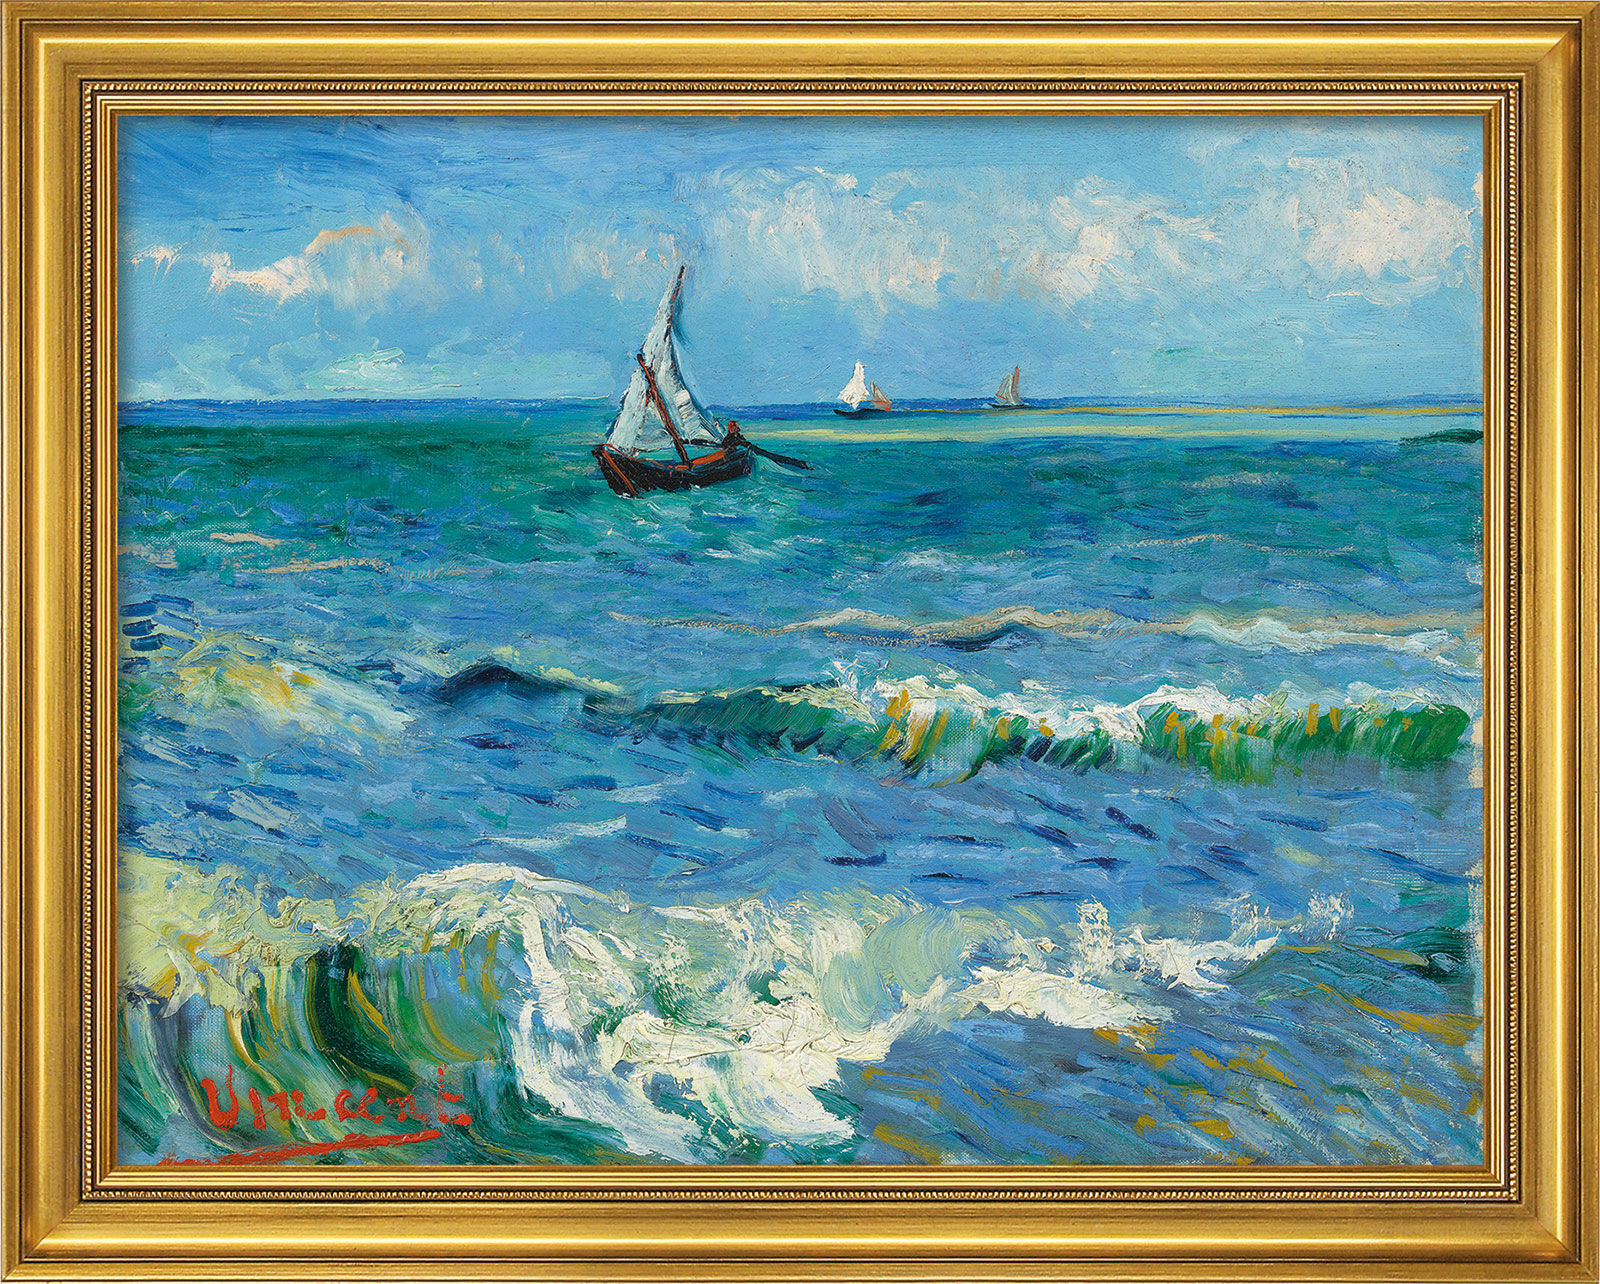 Billede "Seascape near Les Saintes-Maries-de-la-Mer" (1888), gylden indrammet version von Vincent van Gogh